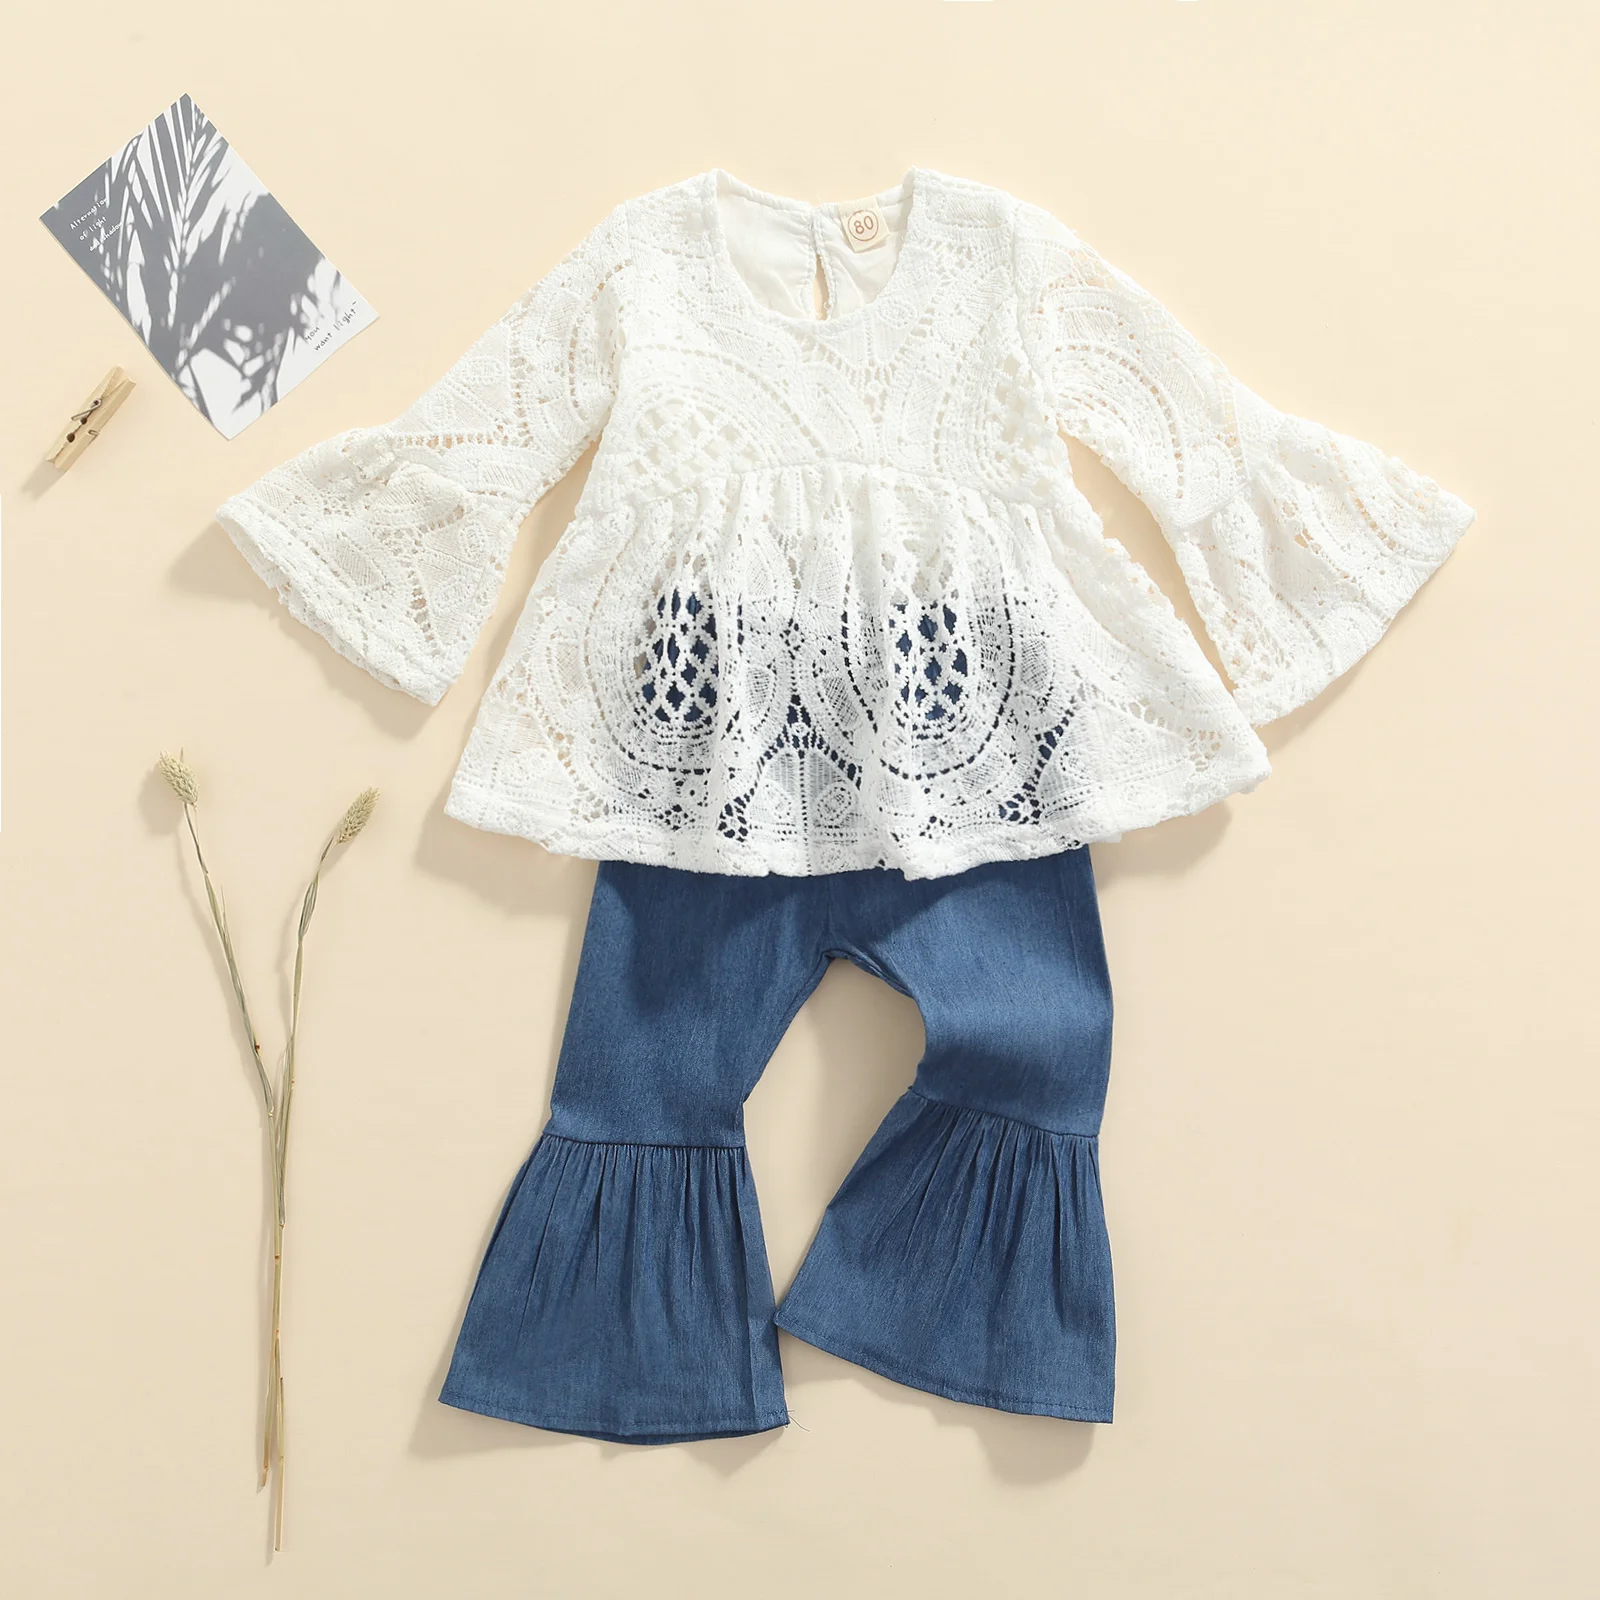 Sonbahar Bebek Çocuk Kız Giyim Setleri 2 adet Dantel Çiçek Uzun Ruffles Kollu t shirt + denim Flare Pantolon 1-5y Görüntü 4